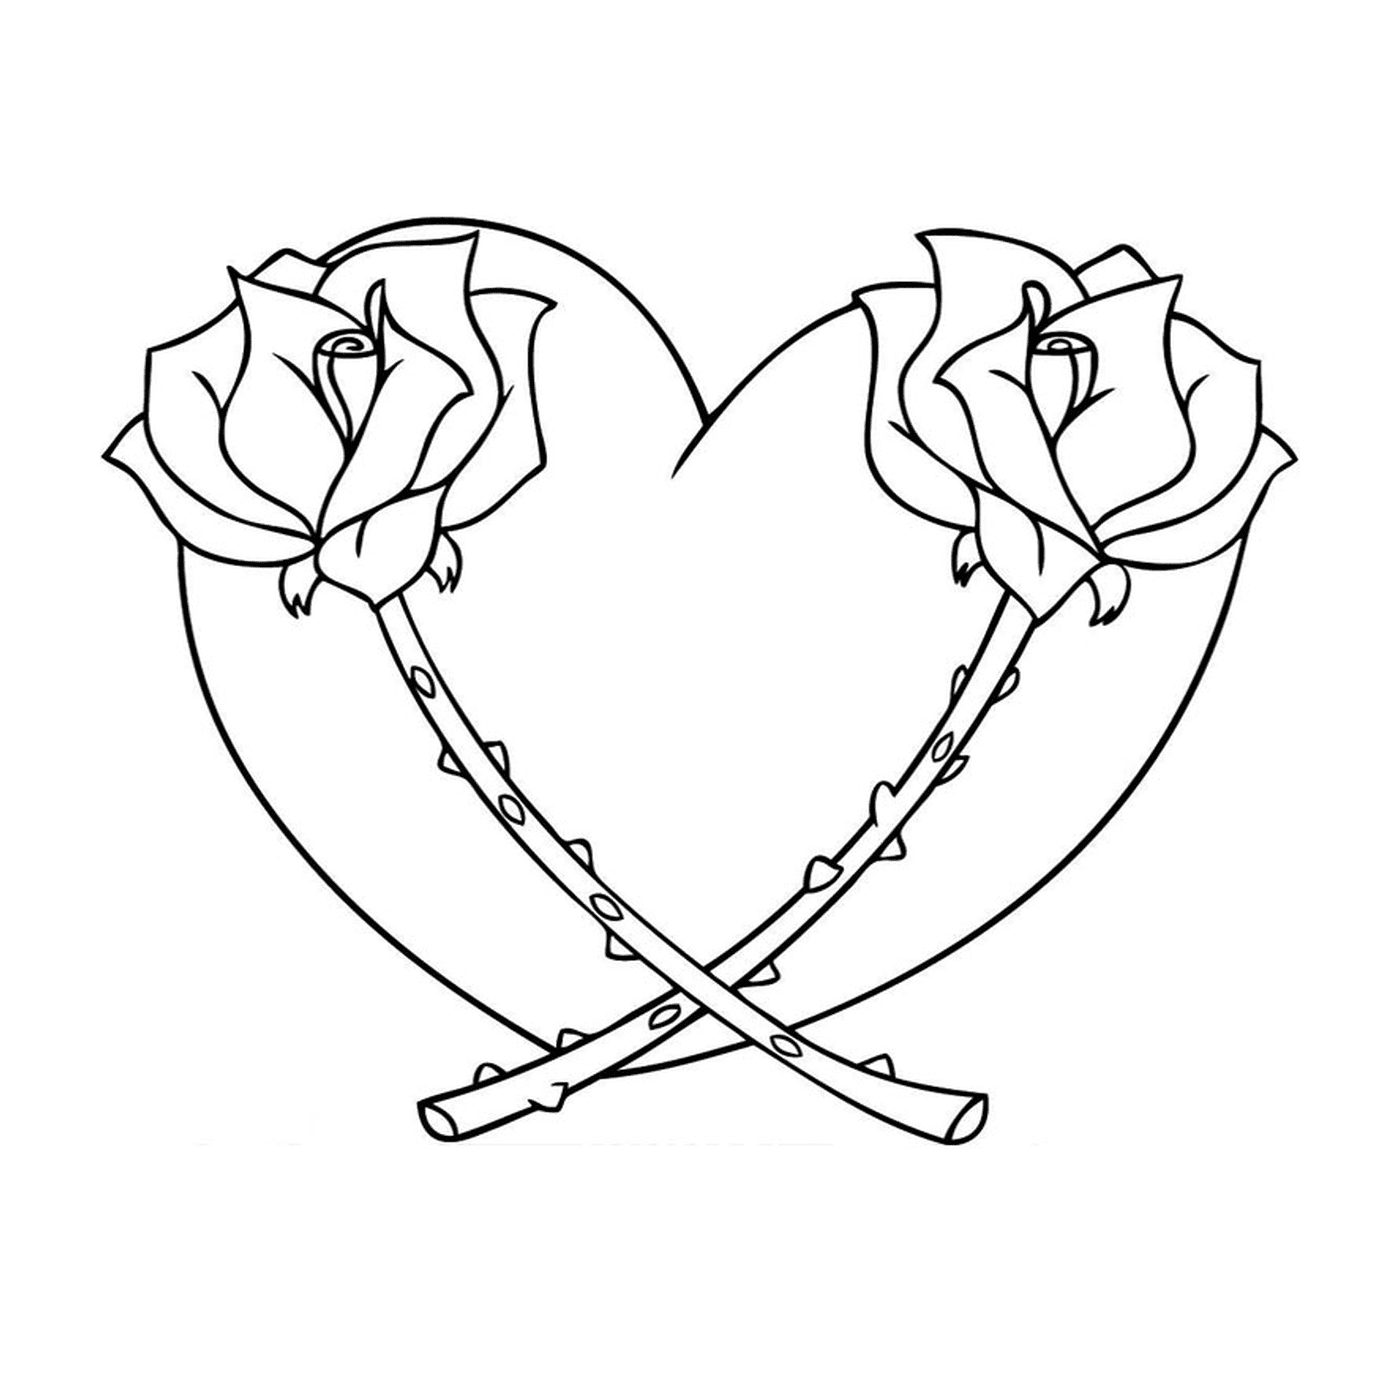  Zwei herzförmige Rosen 